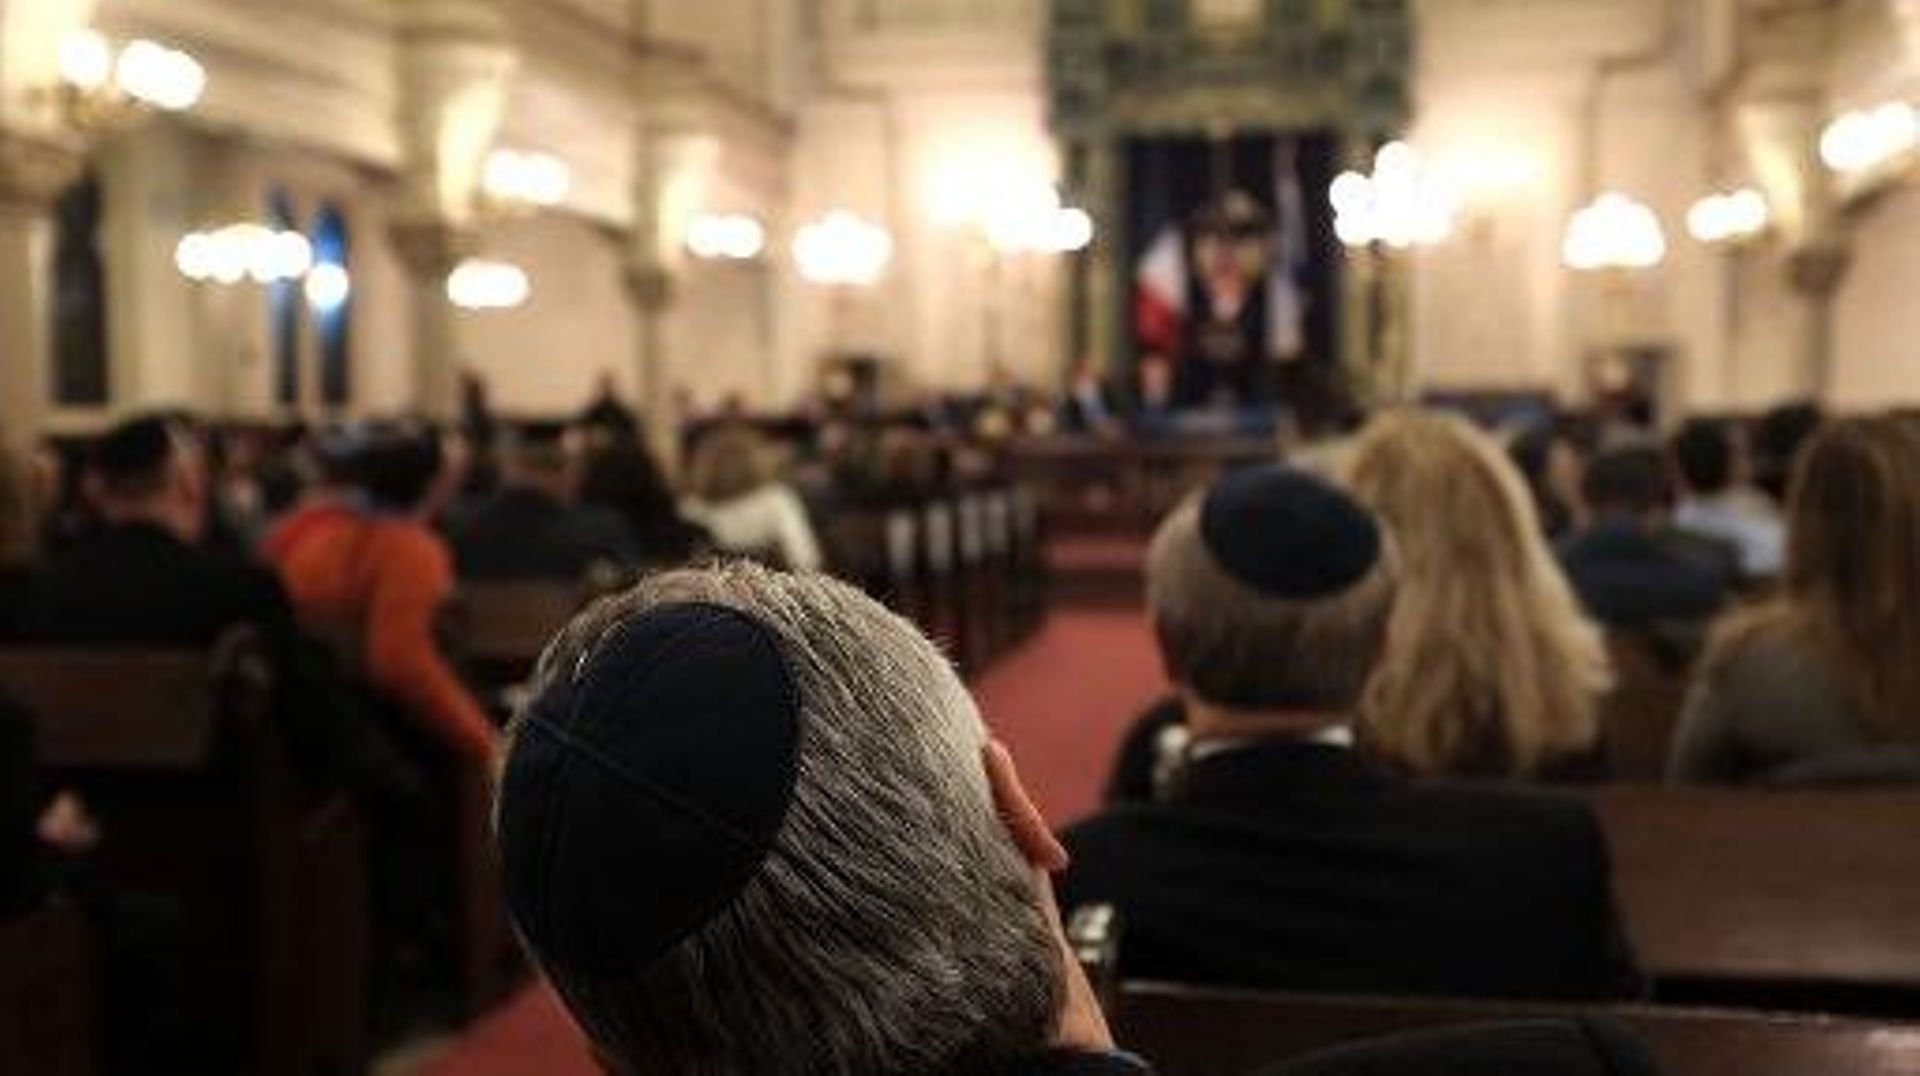 les-actes-antisemites-sont-en-augmentation-dans-le-monde-selon-une-etude